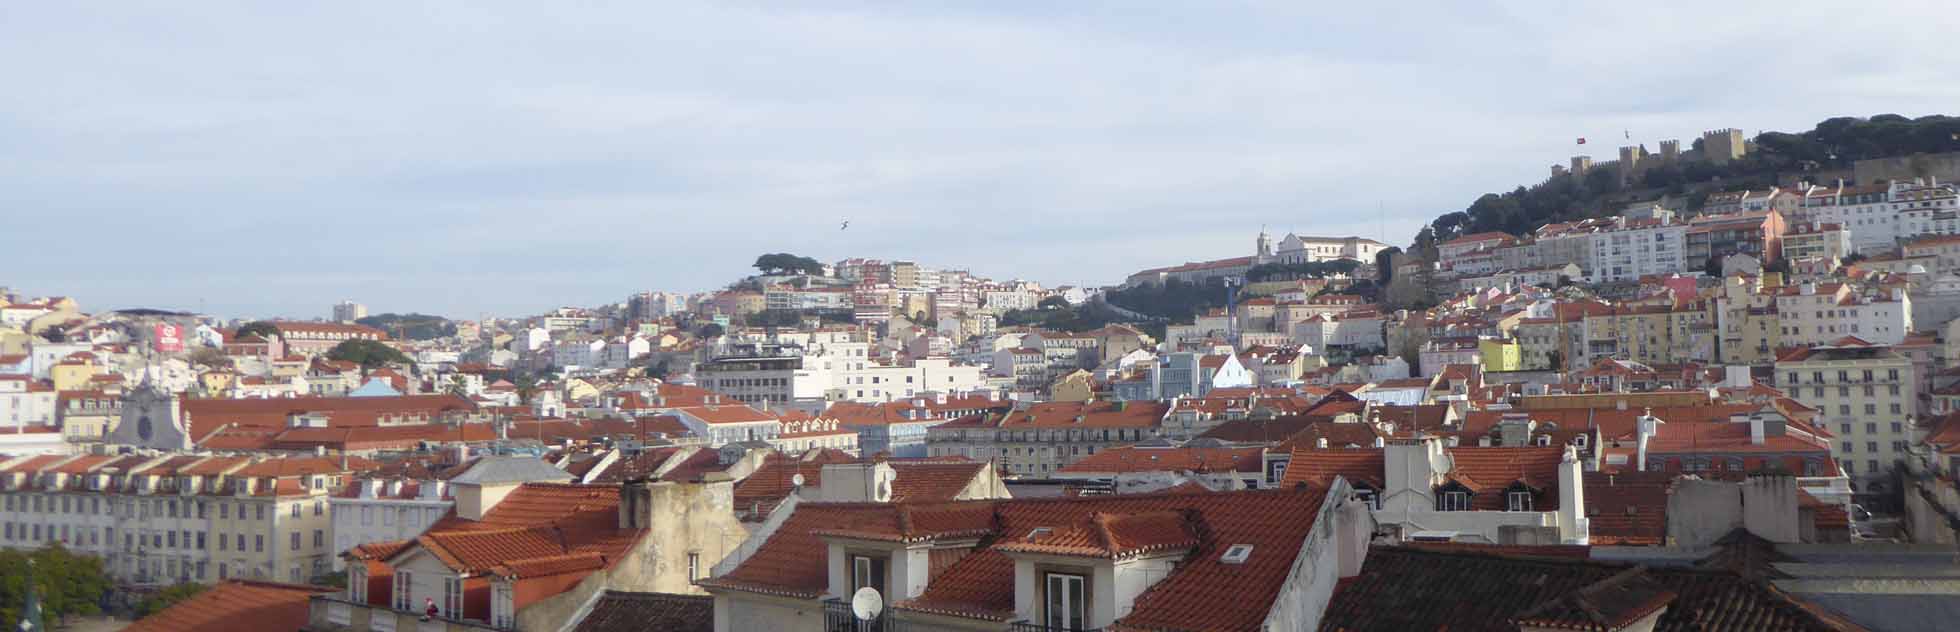 Lisbon pan